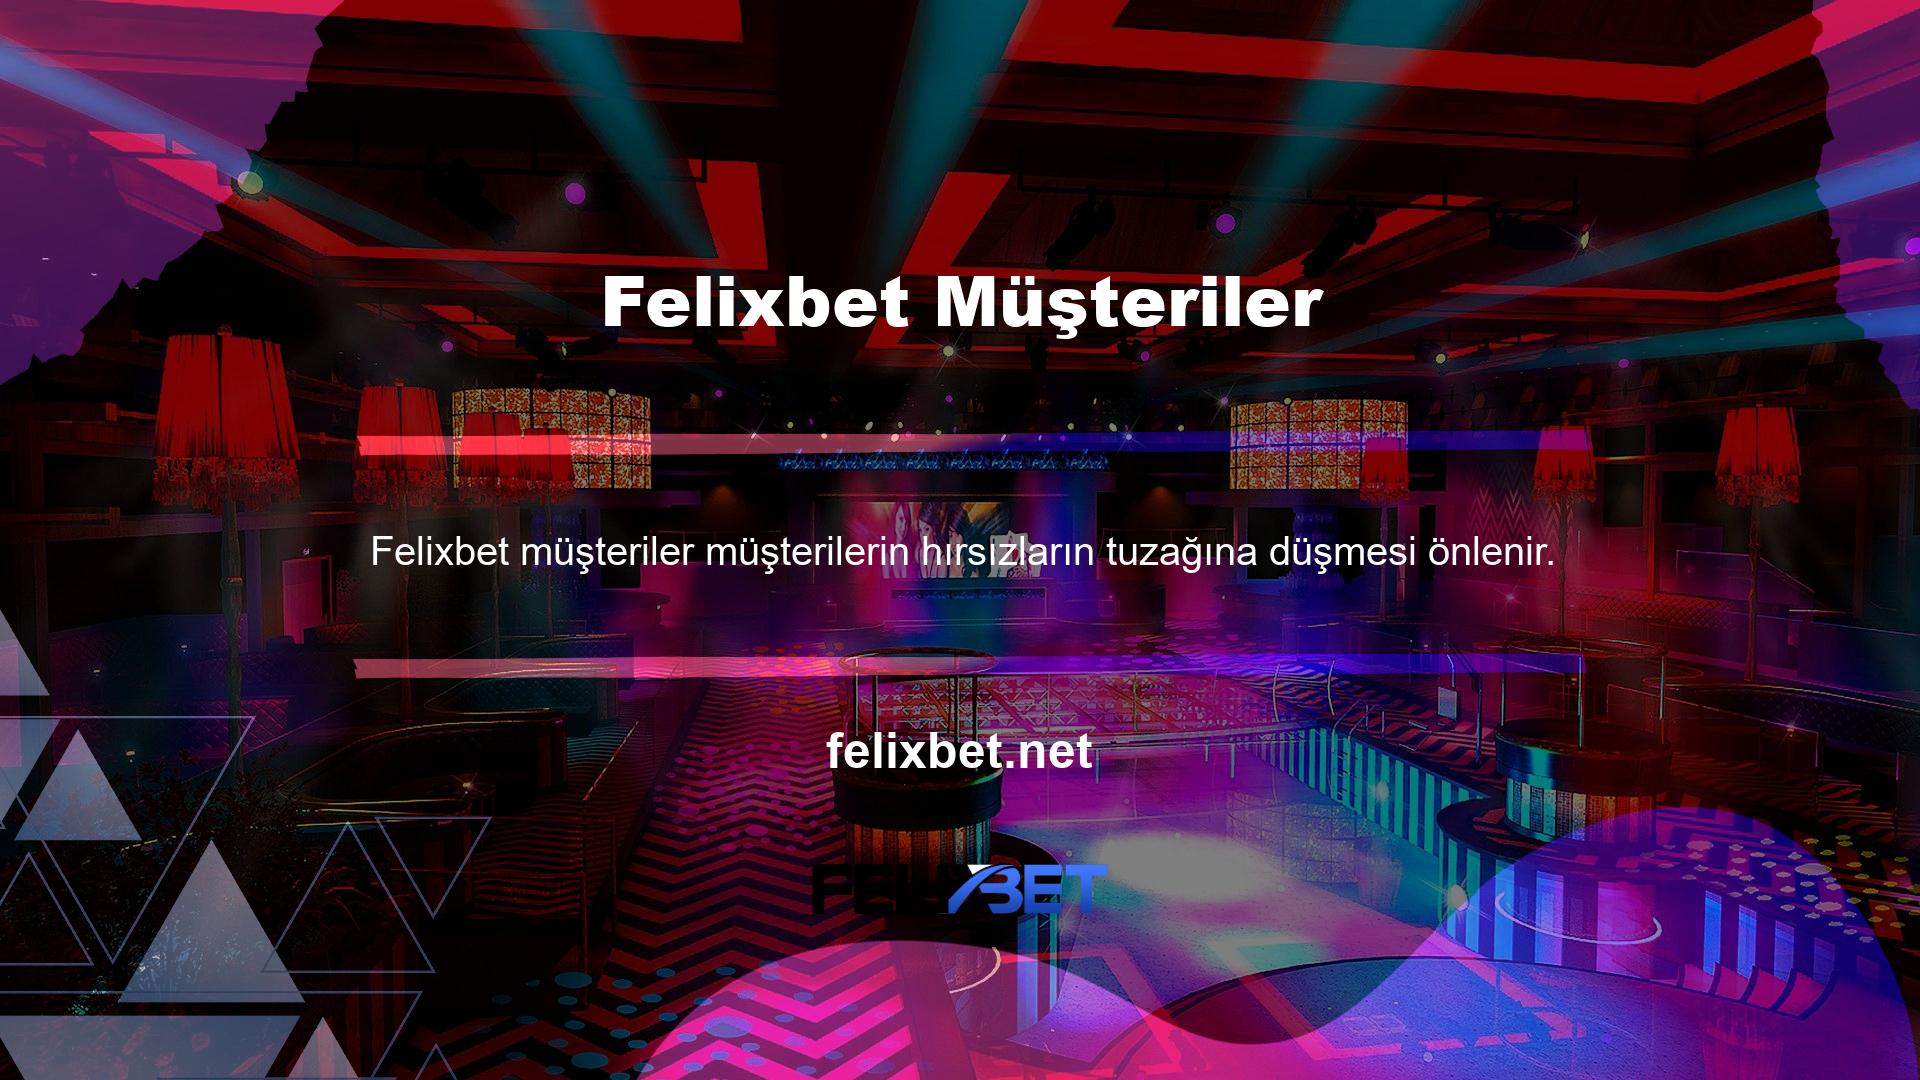 İnternette "Felixbet" terimi arandığında çeşitli ön uç web siteleri ortaya çıkar